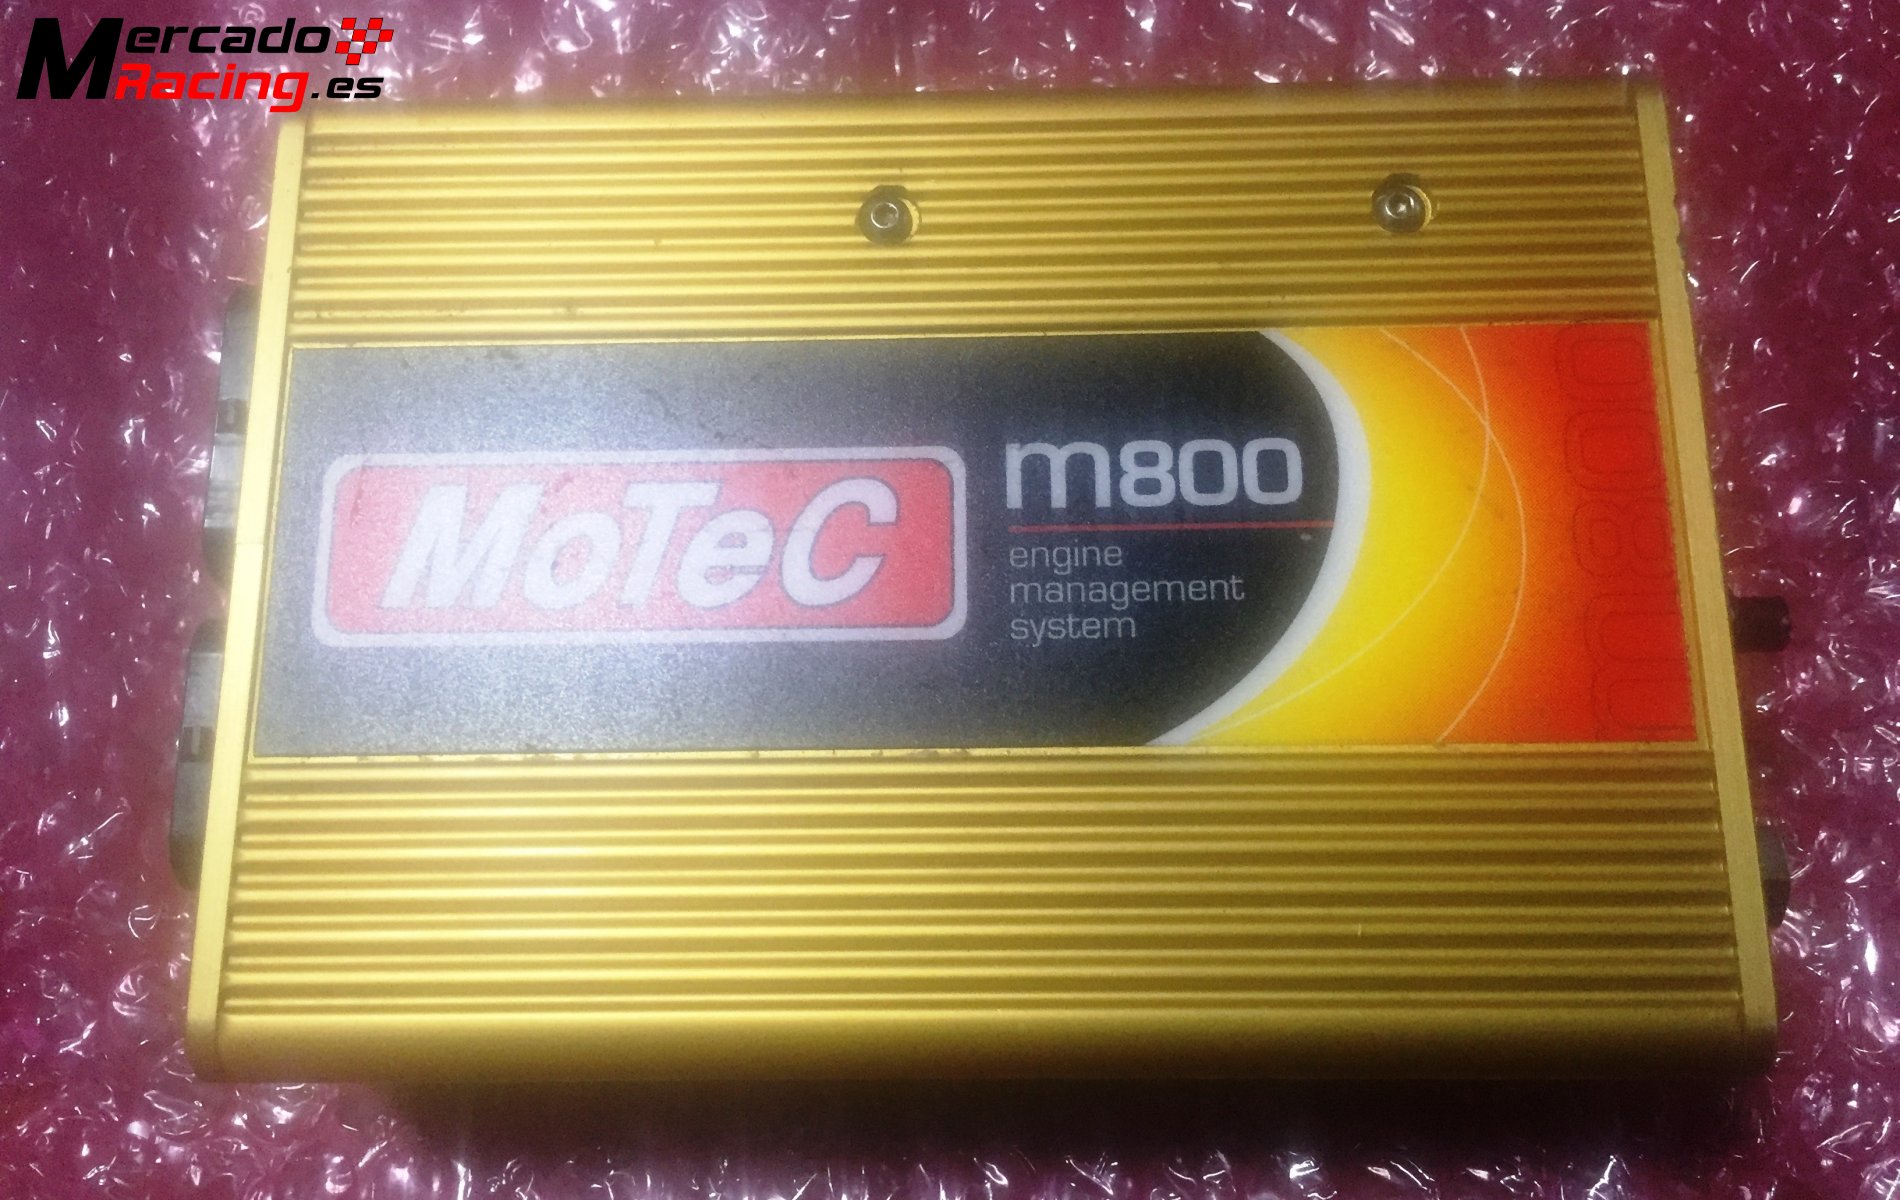 Ecu motec m800 caja dorada con todas las opciones habilitada